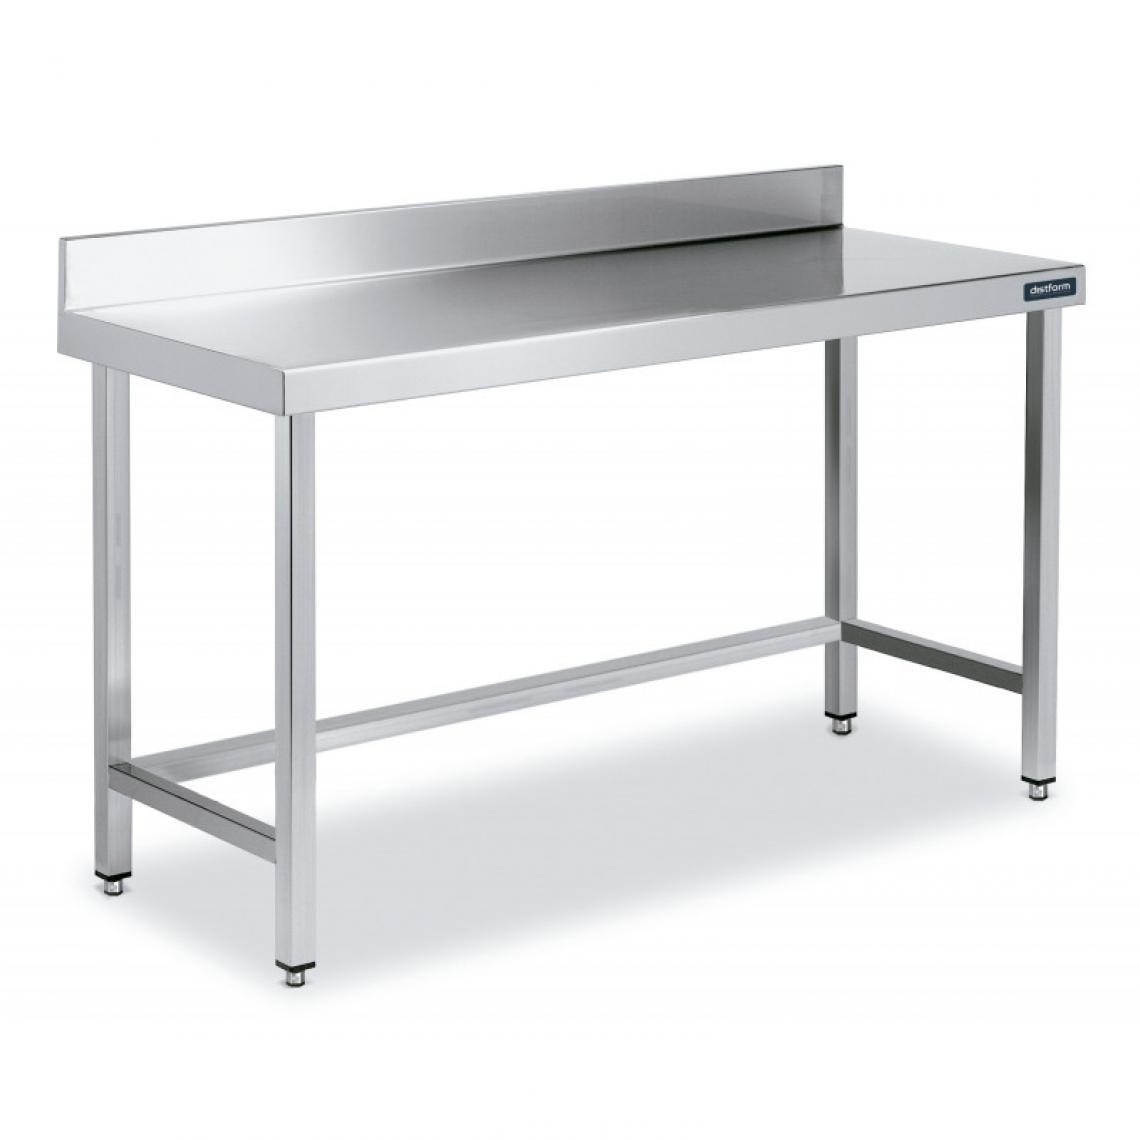 DISTFORM - Table Inox de Travail avec Dosseret Gamme 900 - Distform - Acier inoxydable600x900 - Tables à manger